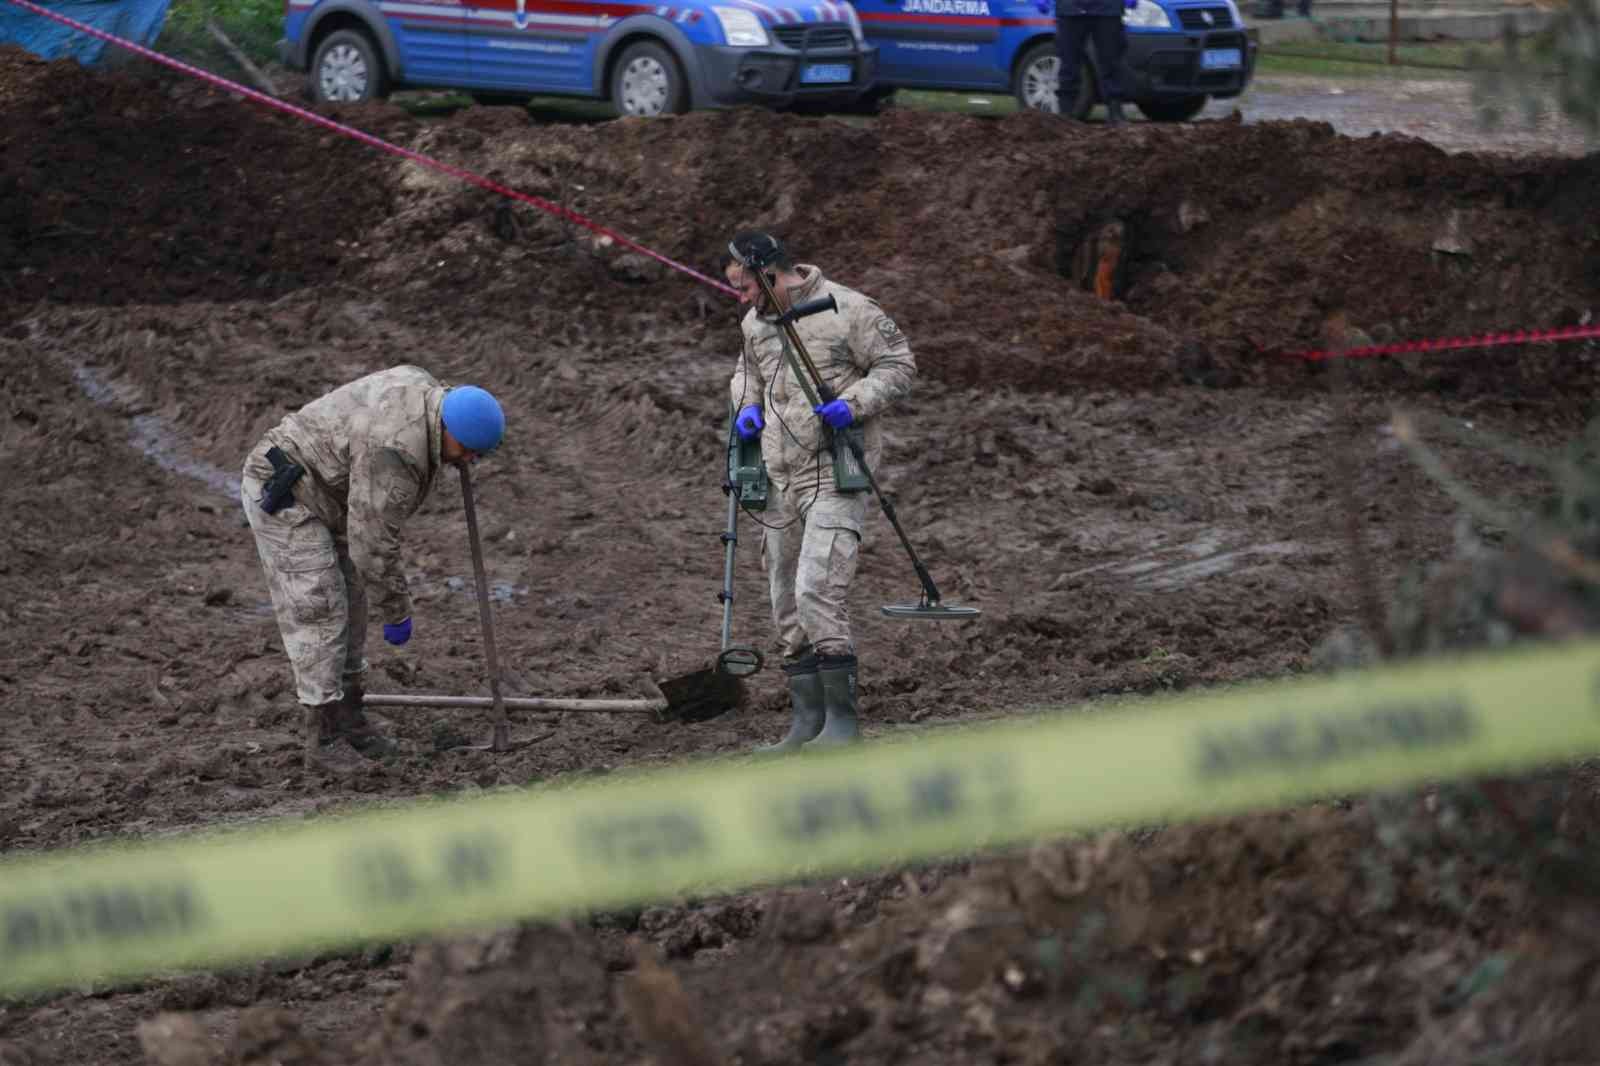 Jandarma dedektörle cinayetin işlendiği suç aletini arıyor